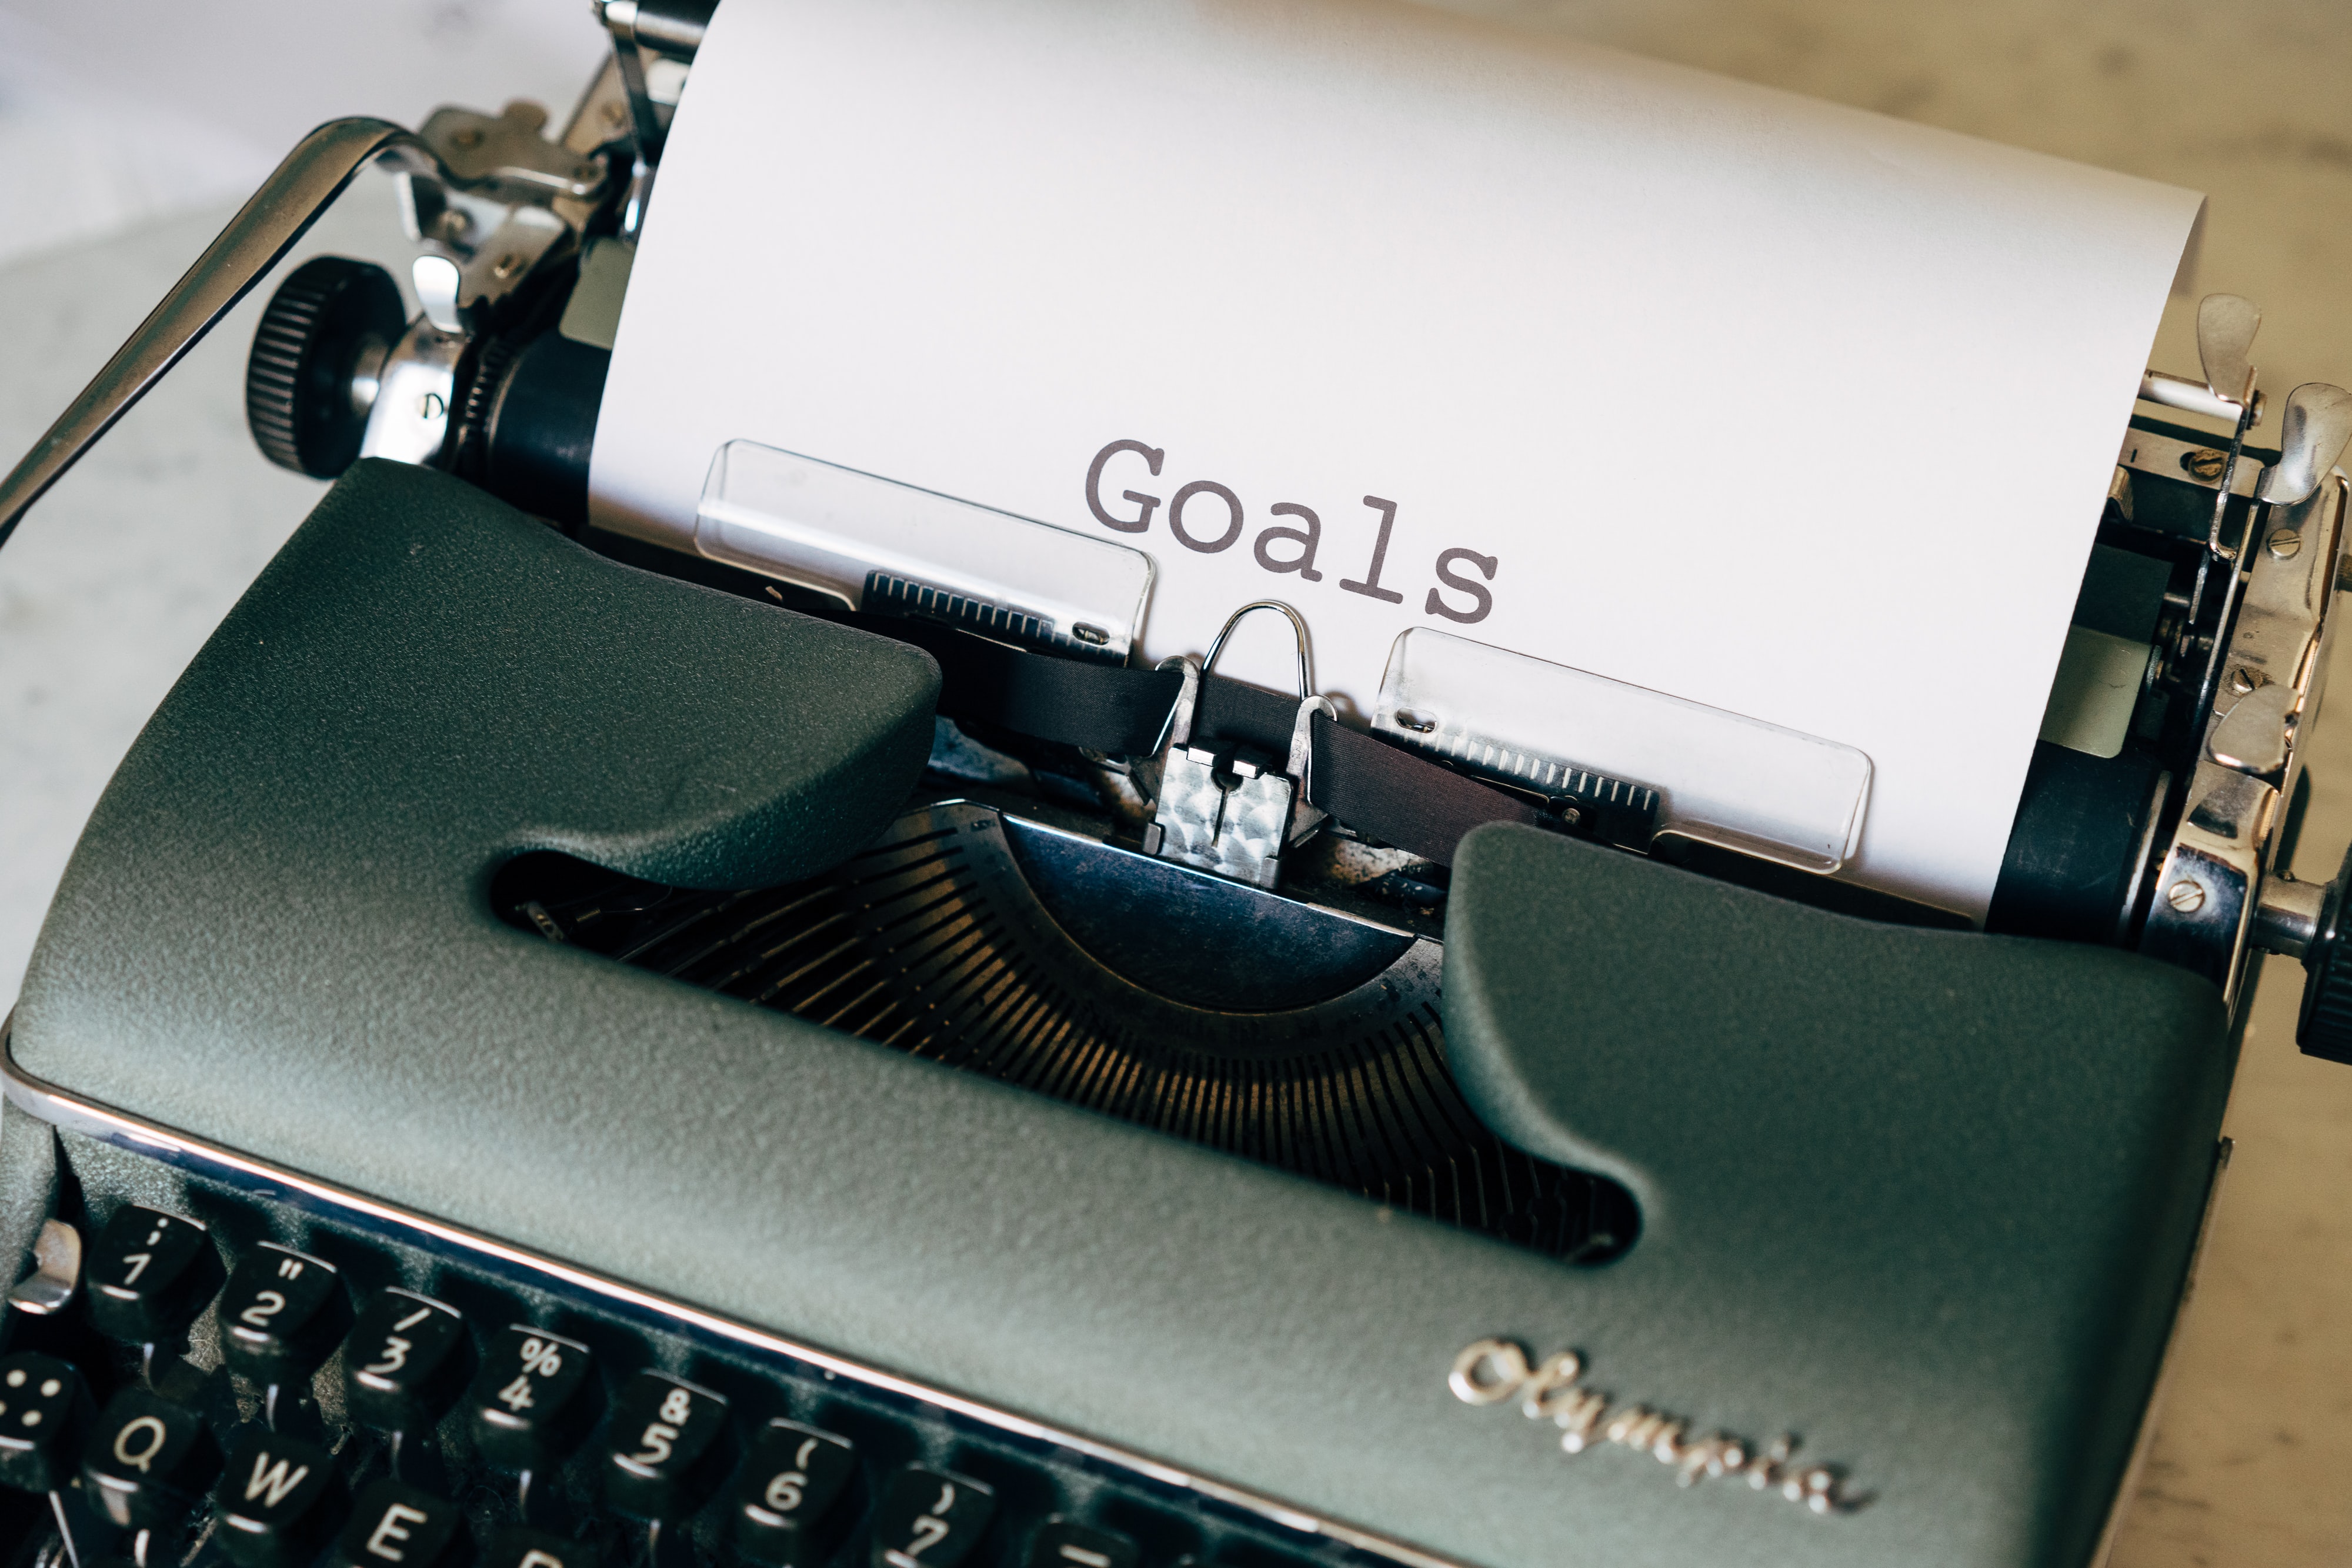 typing goals on a typewriter